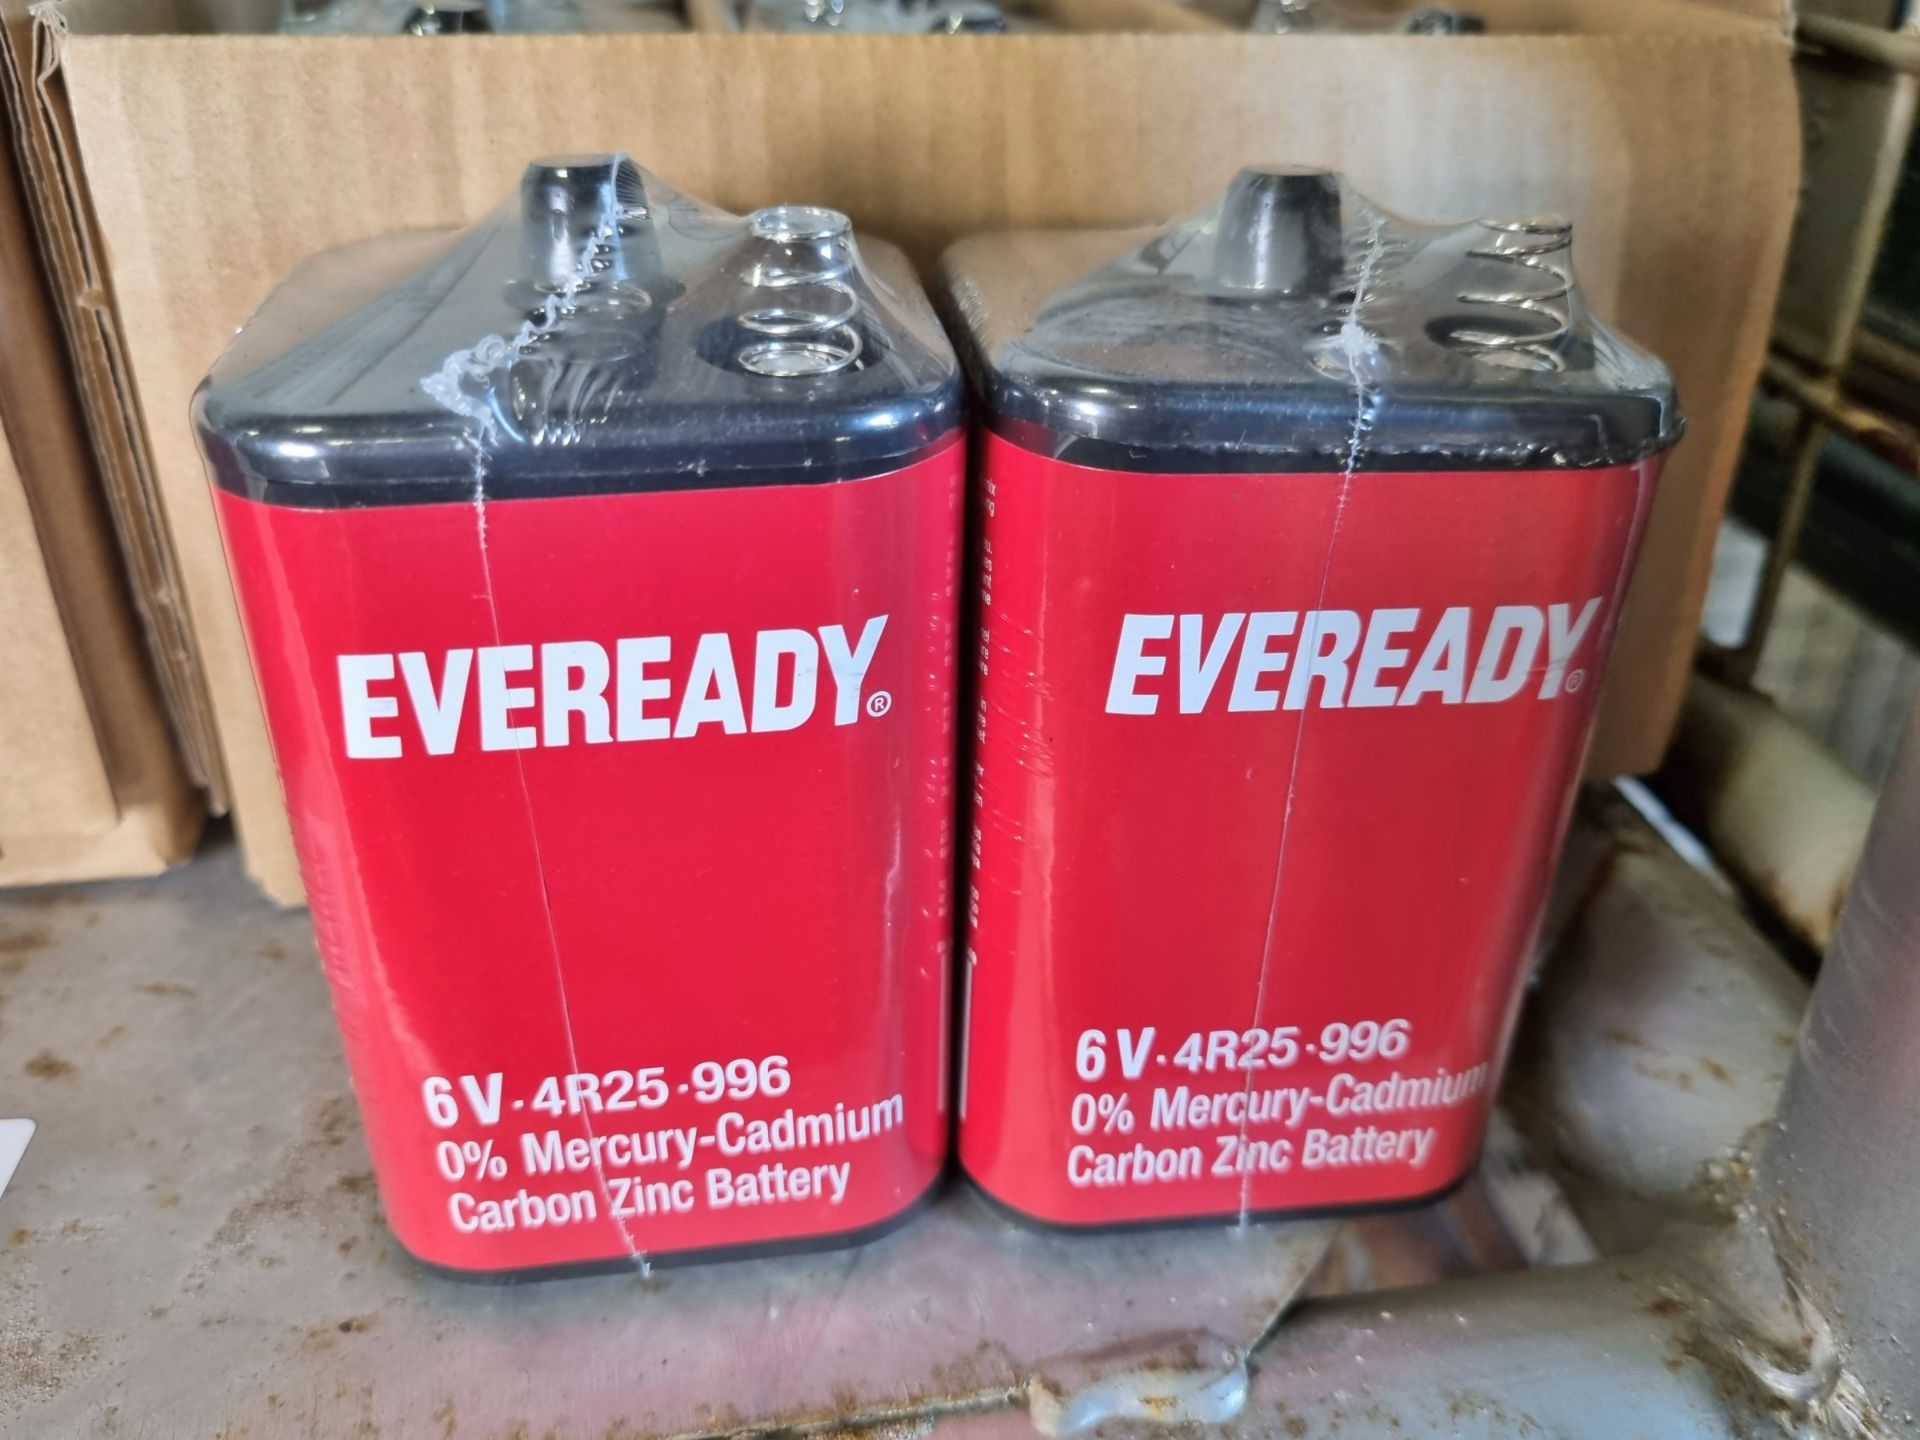 88x Eveready 6 volt 4R25-996 Mercury-cadmium carbon zinc batteries - Image 3 of 9